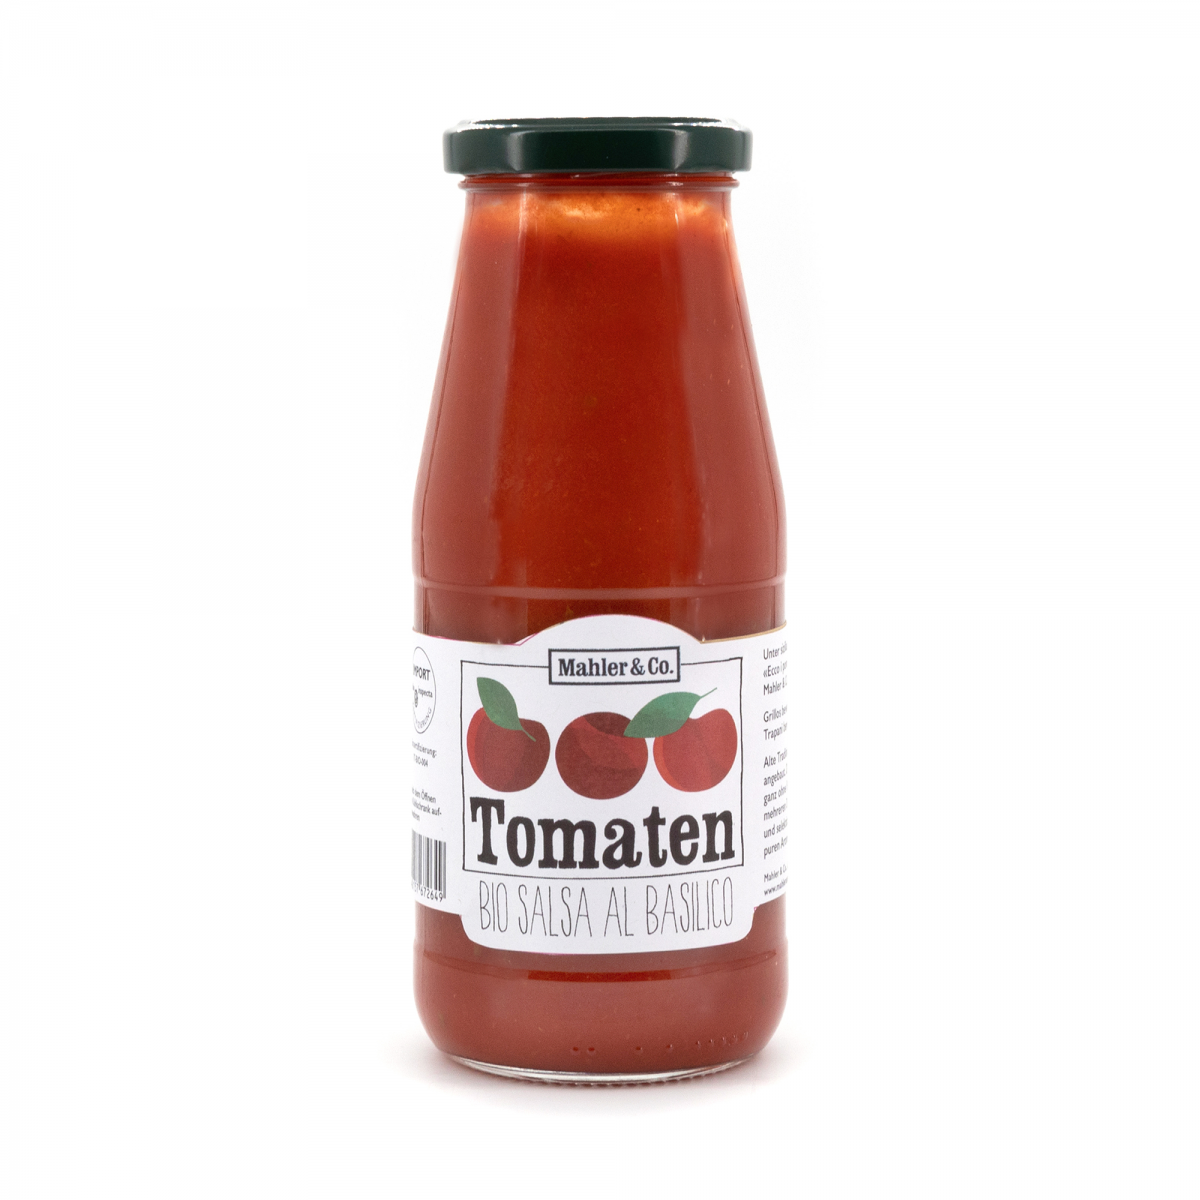 Tomaten Salsa al Basilico aus Sizilien